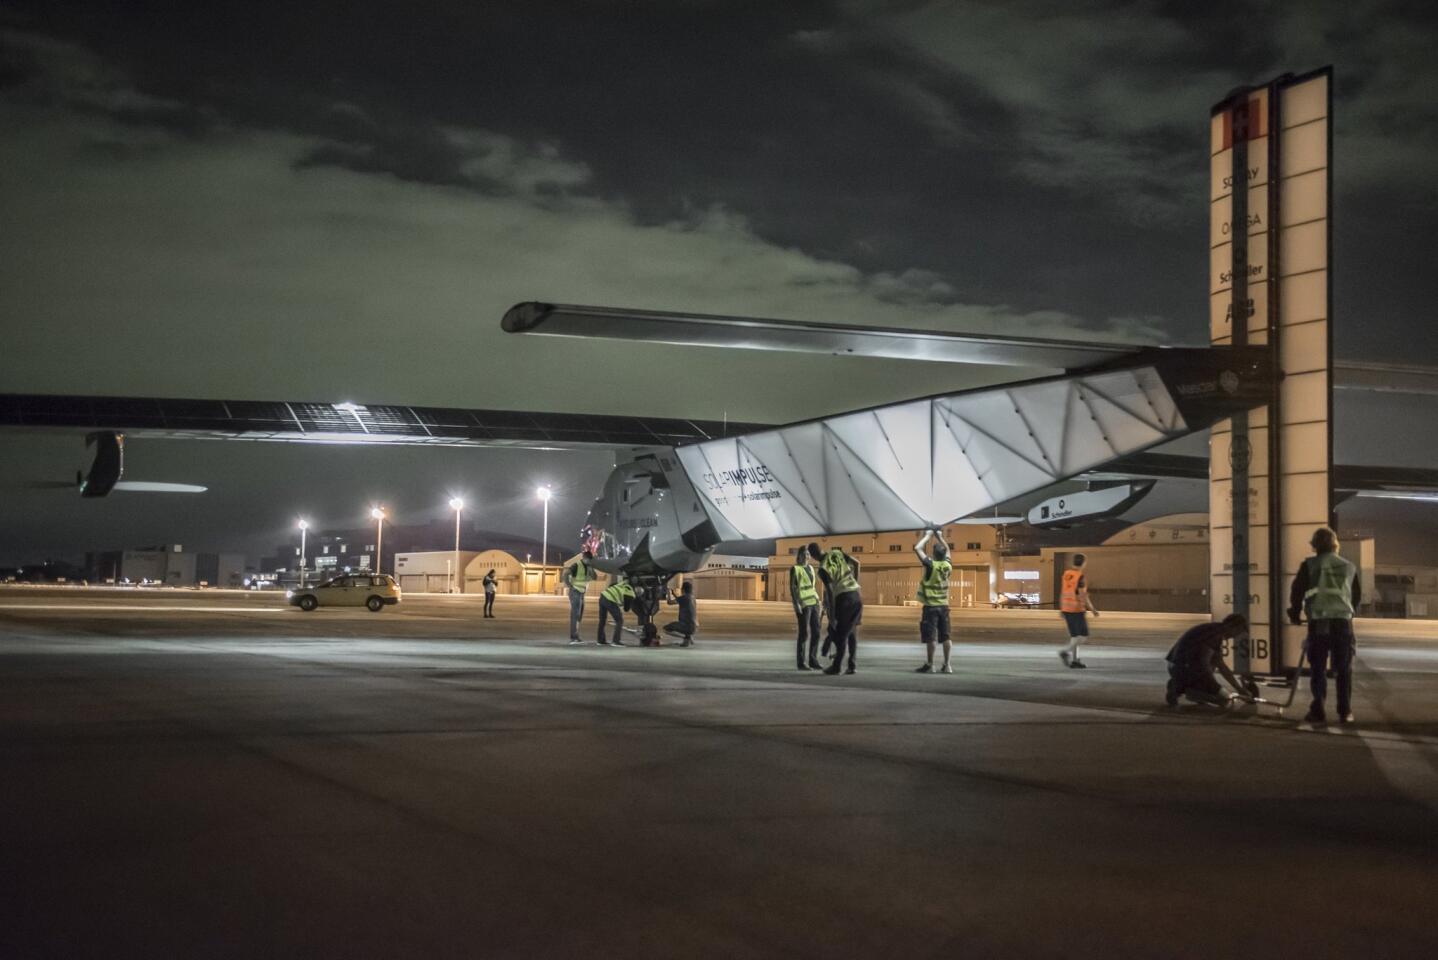 Solar Impulse 2's record-breaking flight